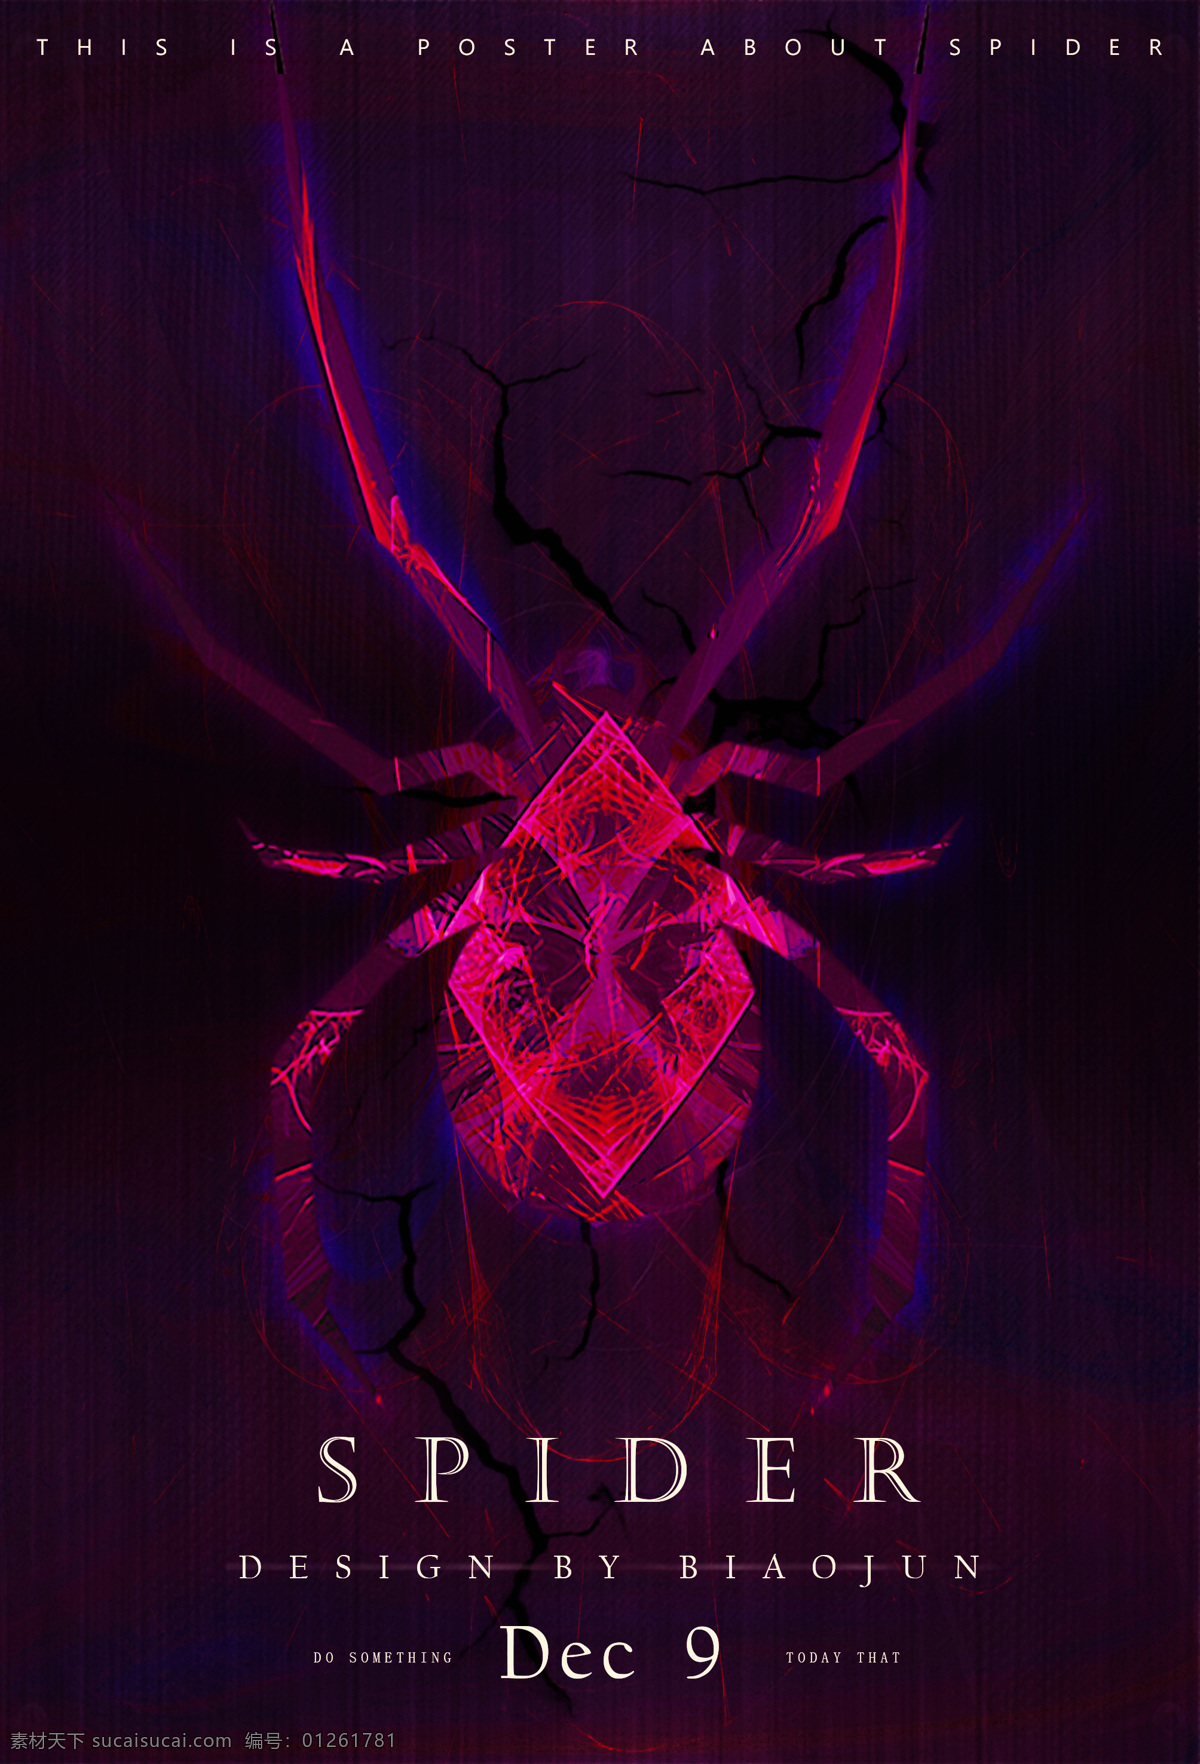 昆虫 分 形 科幻图片 科幻 分形 海报 蜘蛛 平面设计 贴图 三体 3d设计